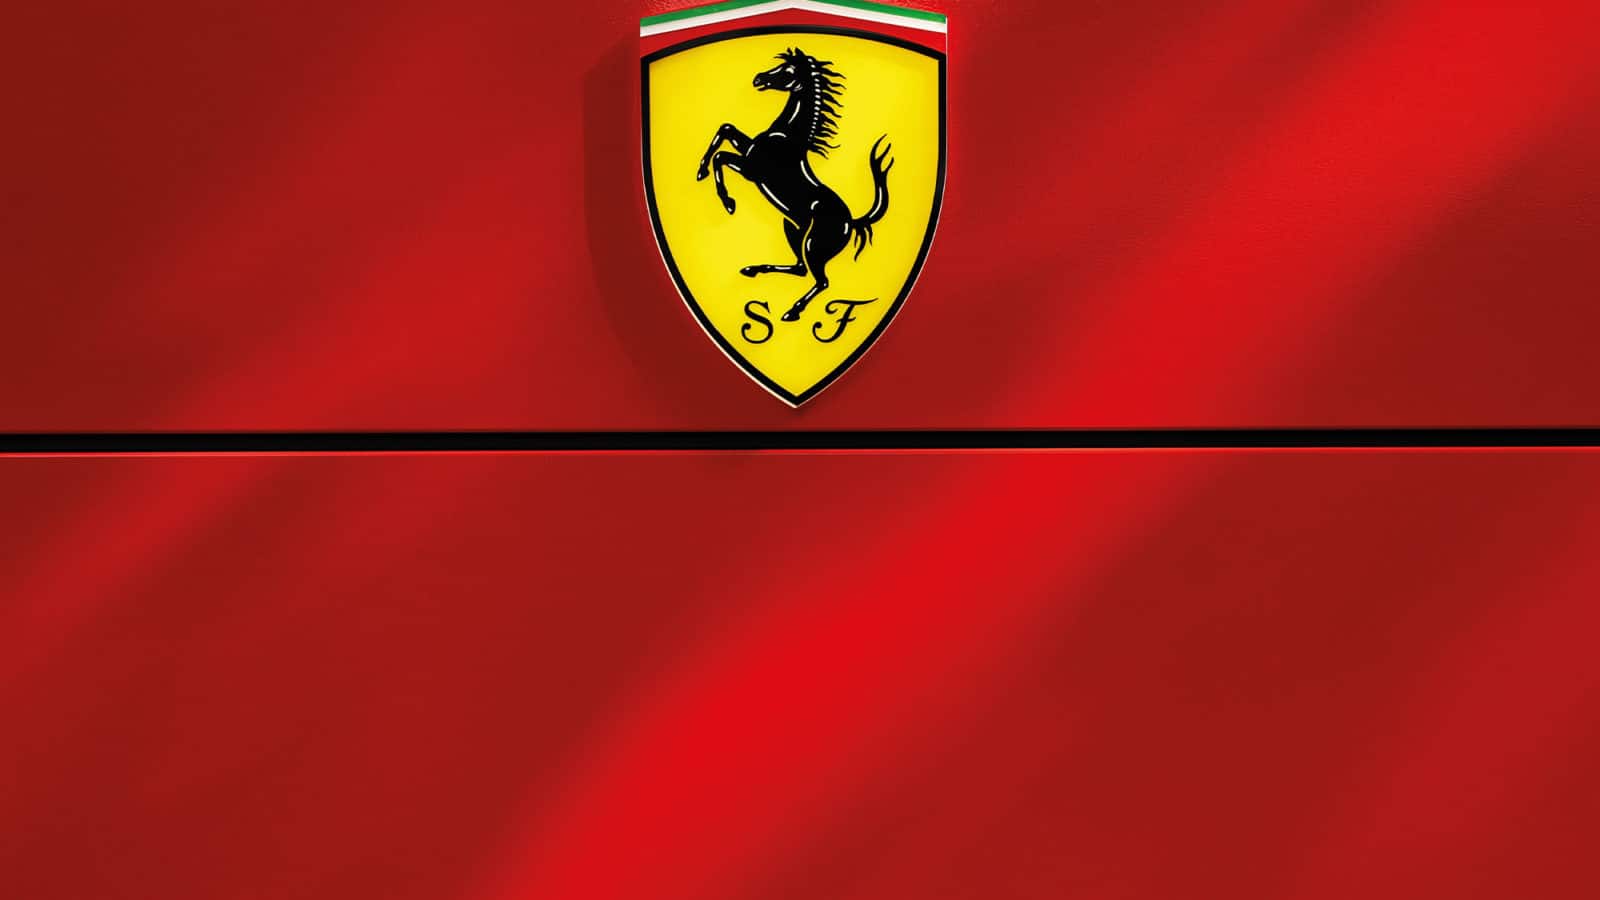 Ferrari badge on garage door